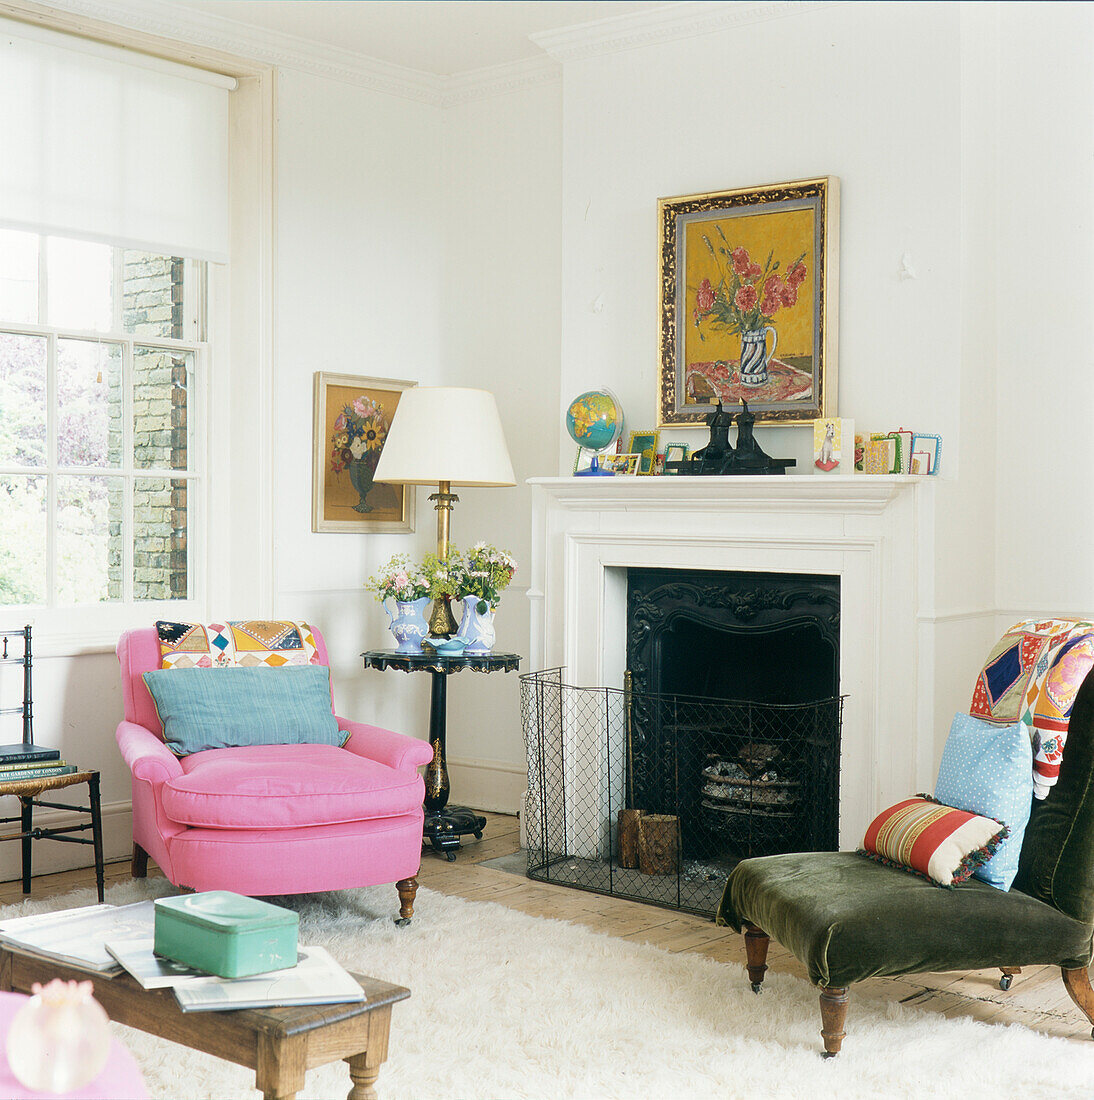 Wohnzimmer mit rosa Sessel